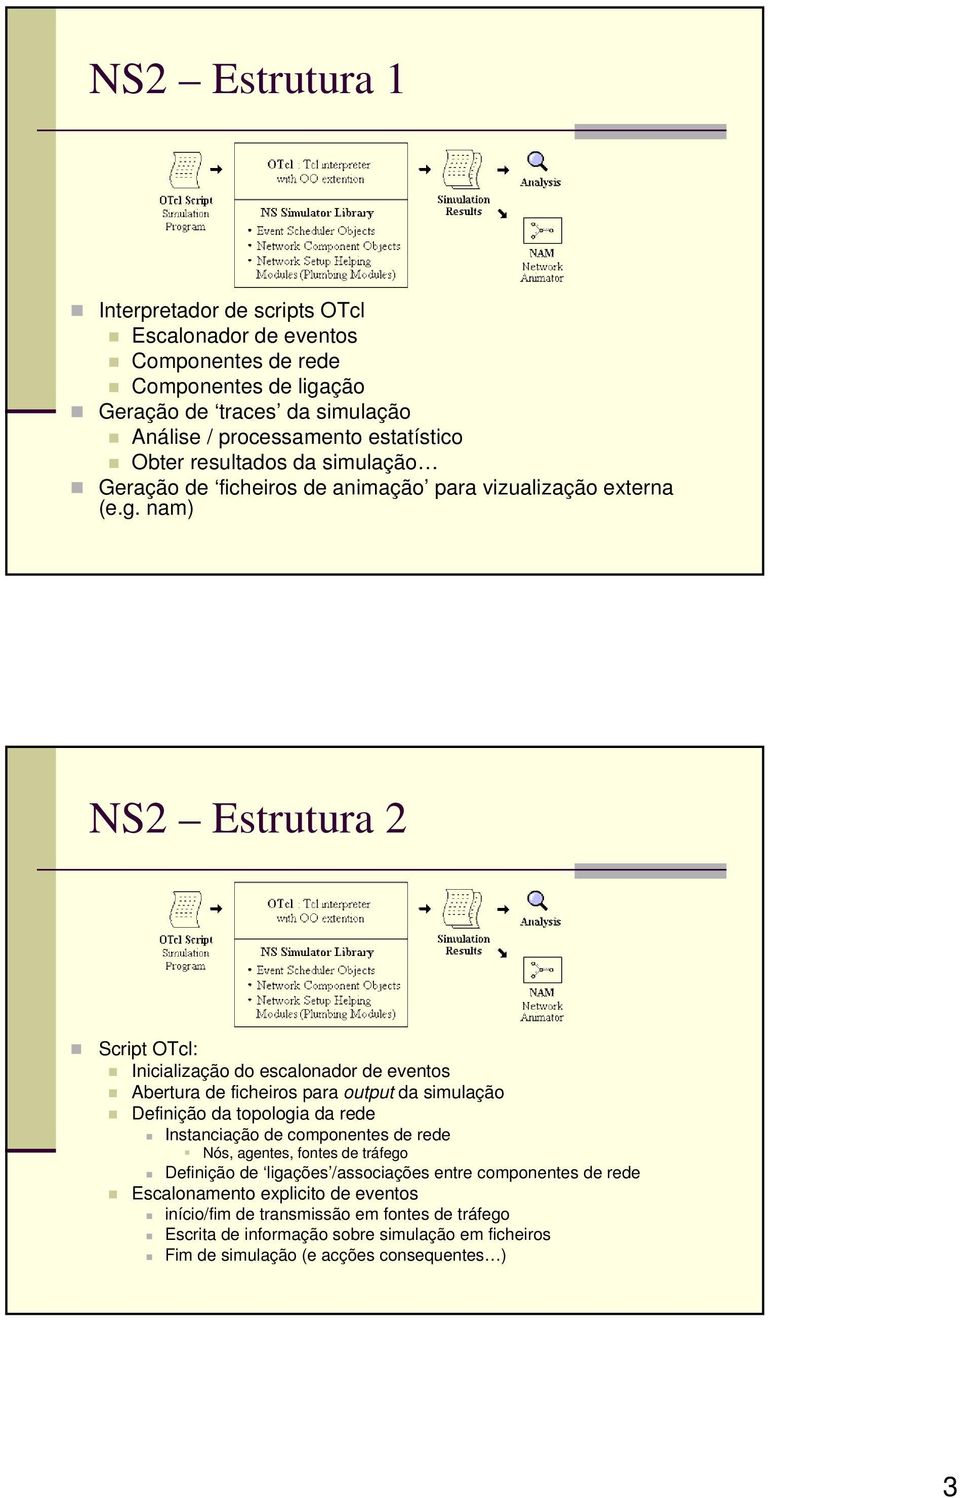 nam) NS2 Estrutura 2 Script OTcl: Inicialização do escalonador de eventos Abertura de ficheiros para output da simulação Definição da topologia da rede Instanciação de componentes de